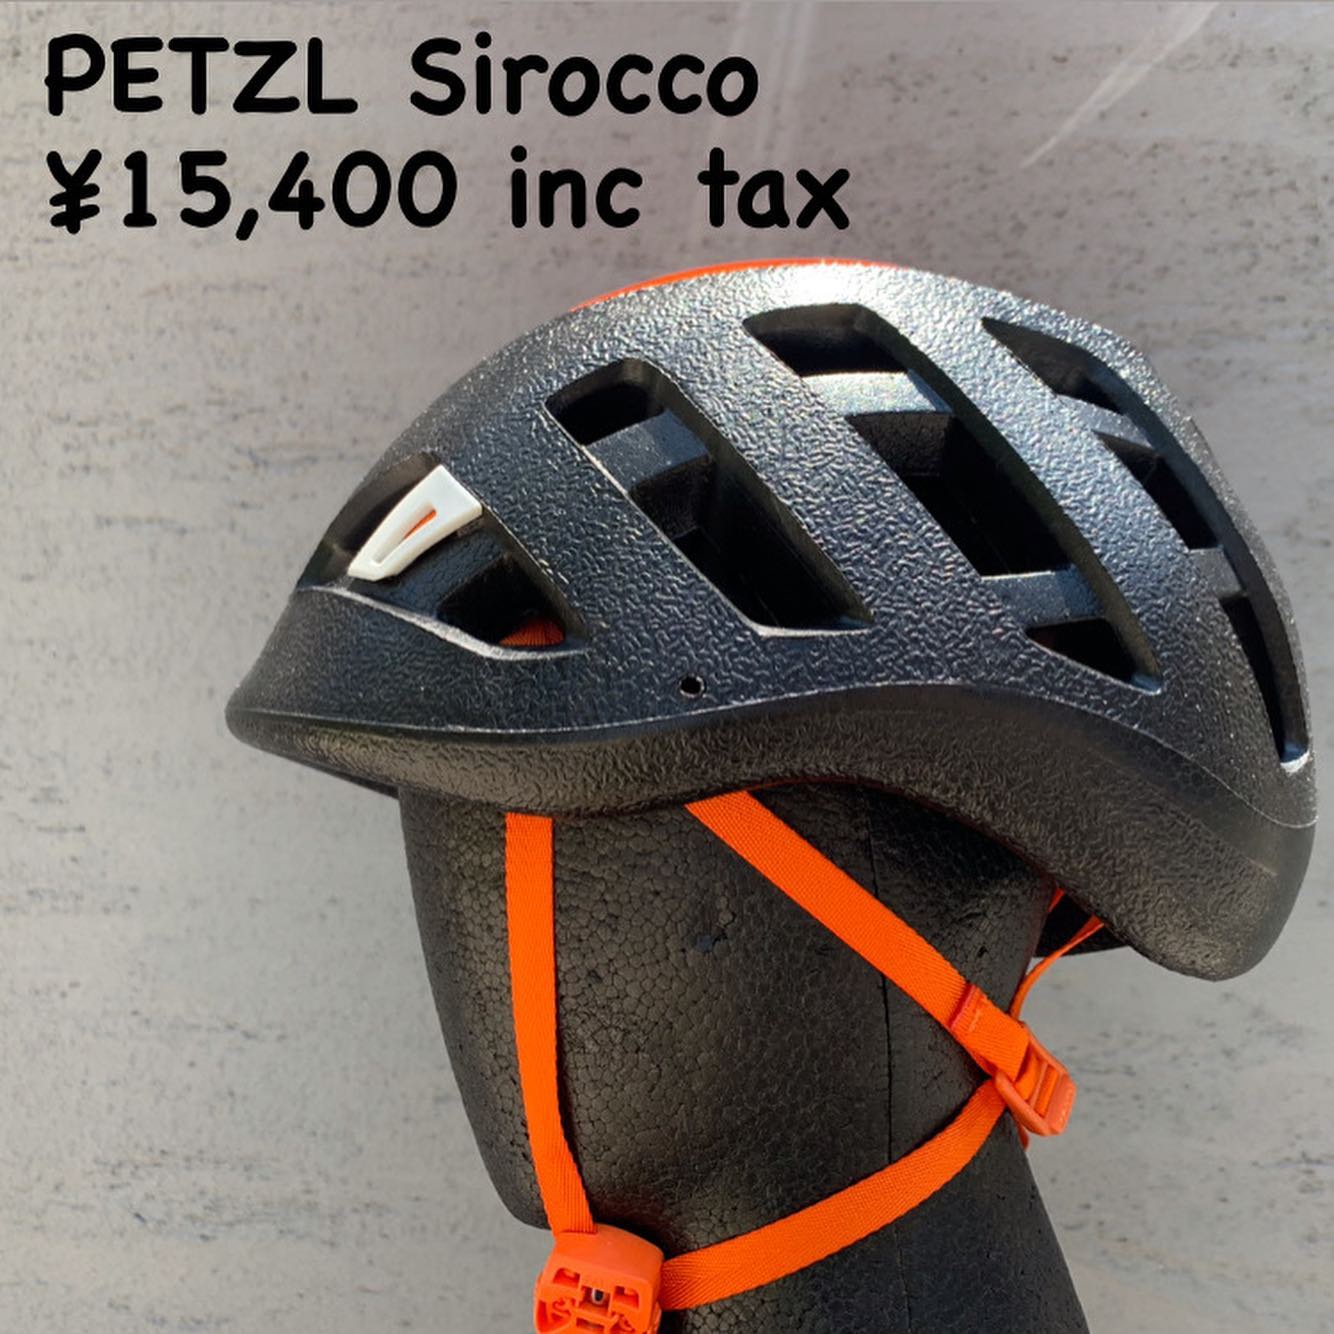 わずか160gの軽量なヘルメット『PETZL シロッコ』のご紹介